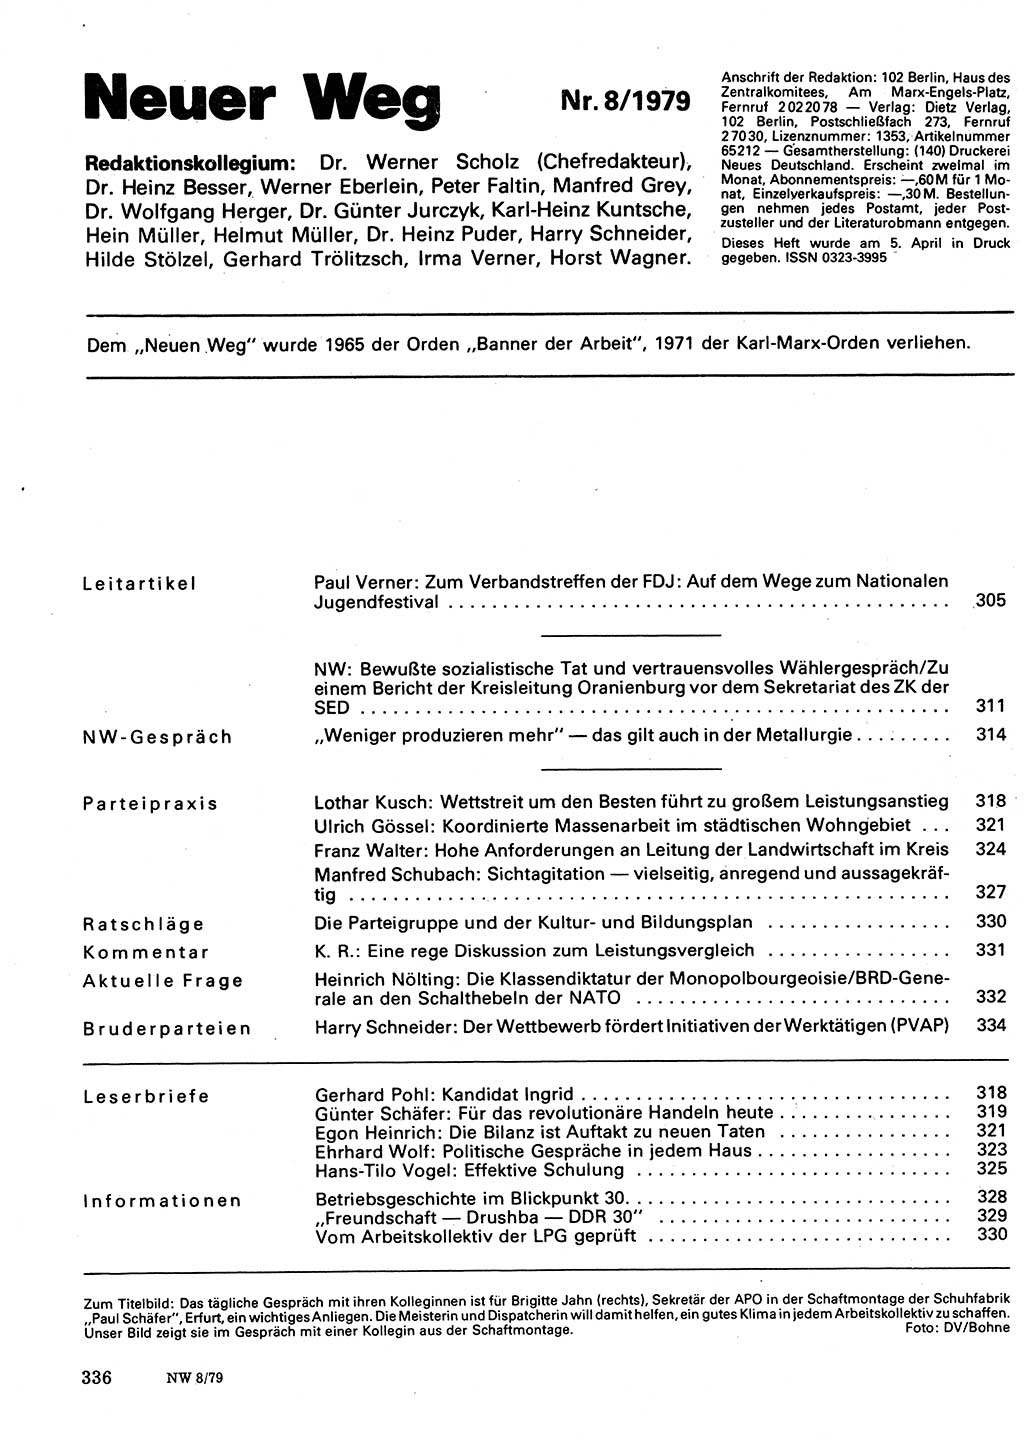 Neuer Weg (NW), Organ des Zentralkomitees (ZK) der SED (Sozialistische Einheitspartei Deutschlands) für Fragen des Parteilebens, 34. Jahrgang [Deutsche Demokratische Republik (DDR)] 1979, Seite 336 (NW ZK SED DDR 1979, S. 336)